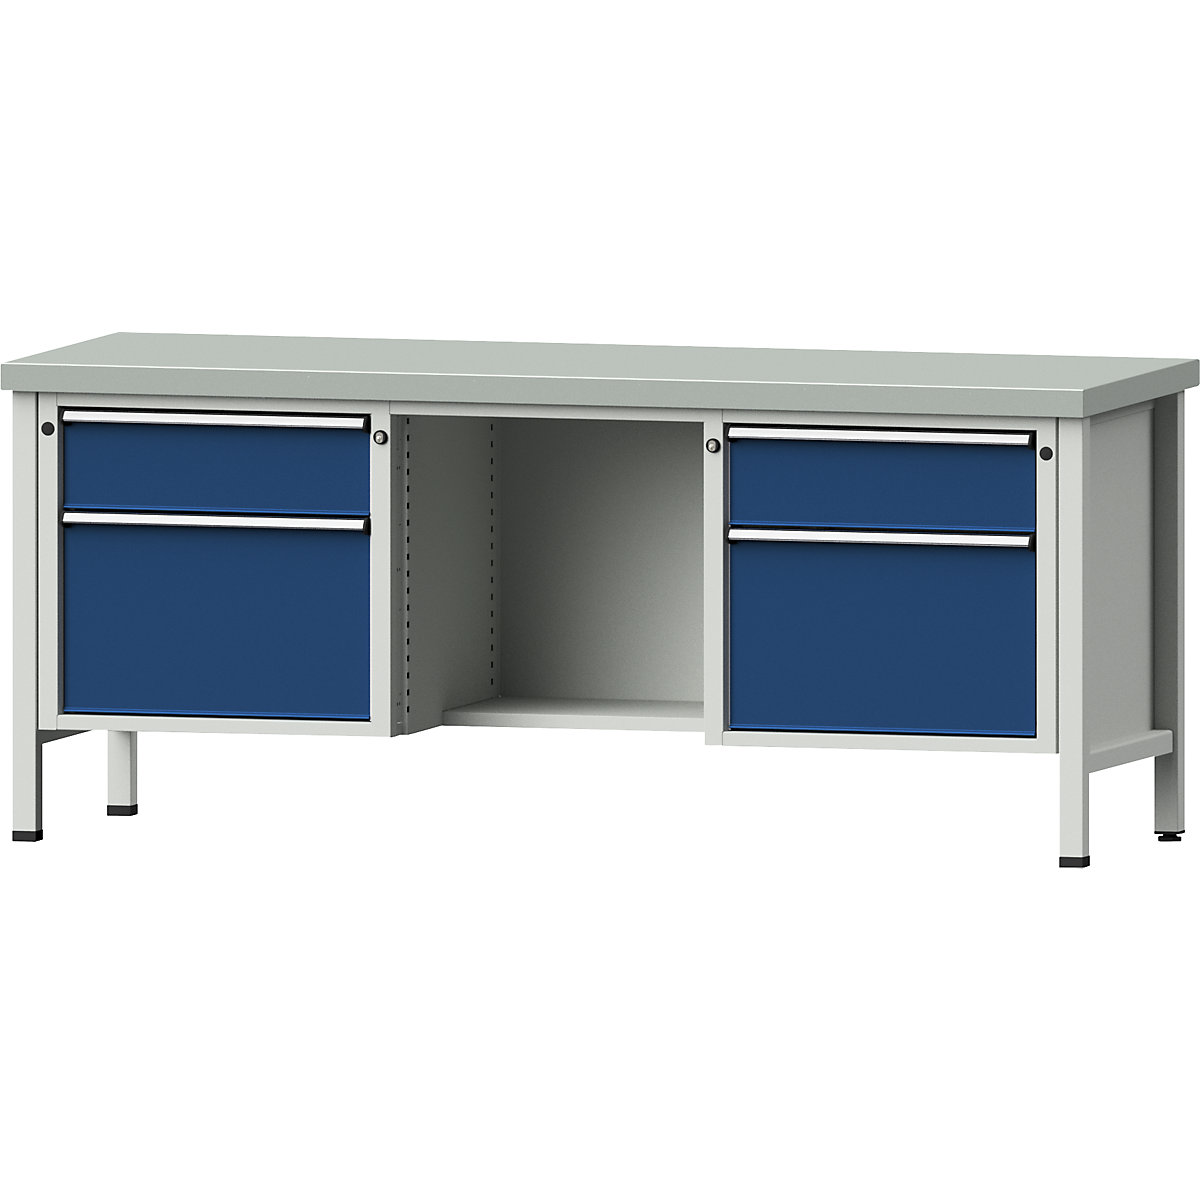 Dílenský stůl s rámovou konstrukcí – ANKE, zásuvky 2 x 180 mm, 2 x 360 mm, ½ odkládací police, ocelový plech, plný výsuv-10